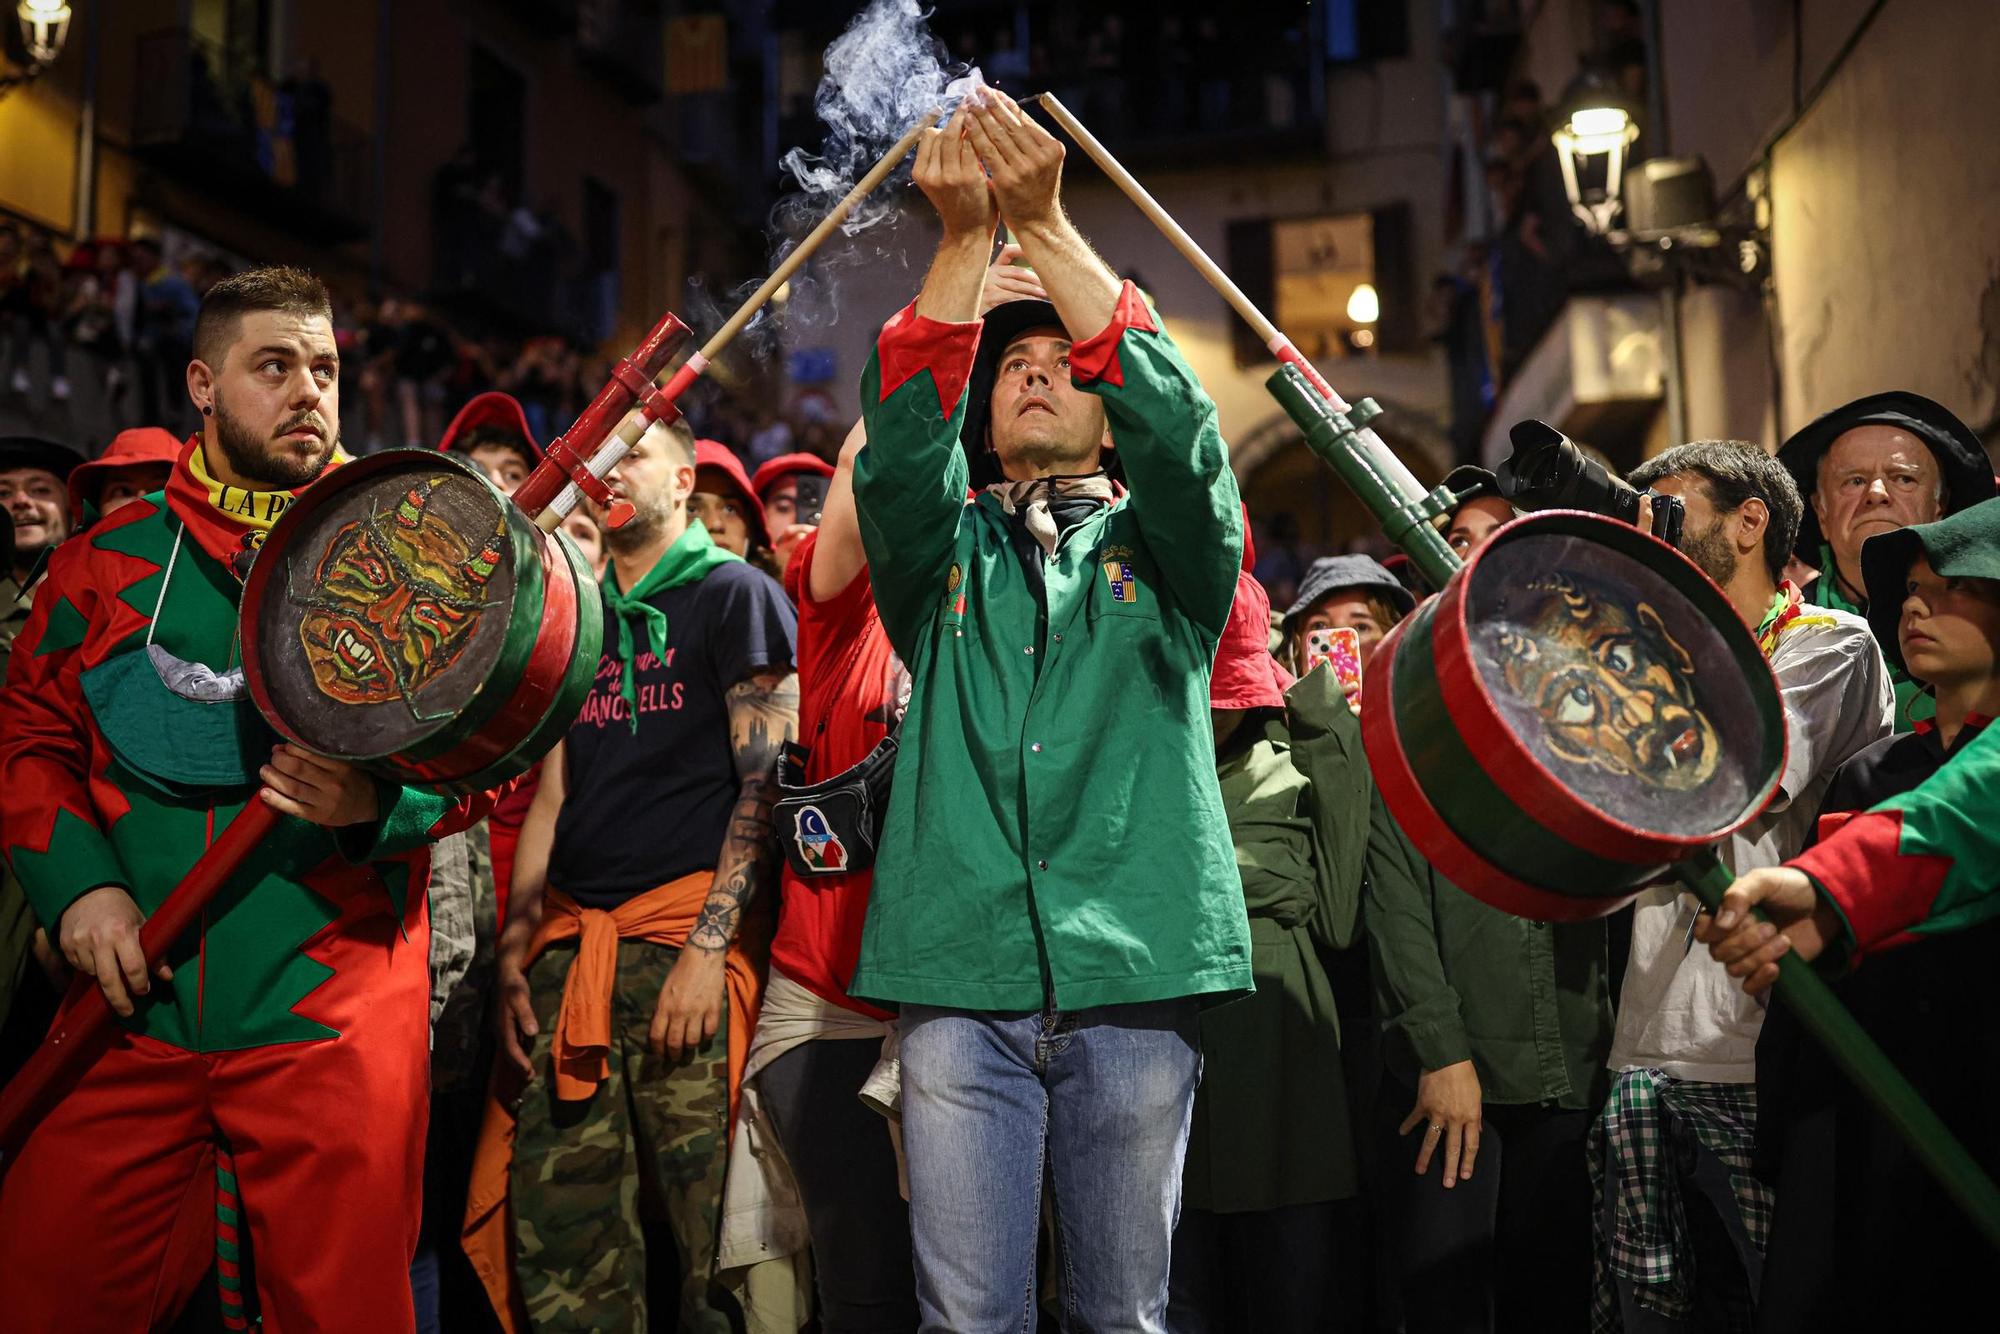 EN FOTOS | Berga posa punt i final a cinc dies de festa amb una Patum Completa multitudinària